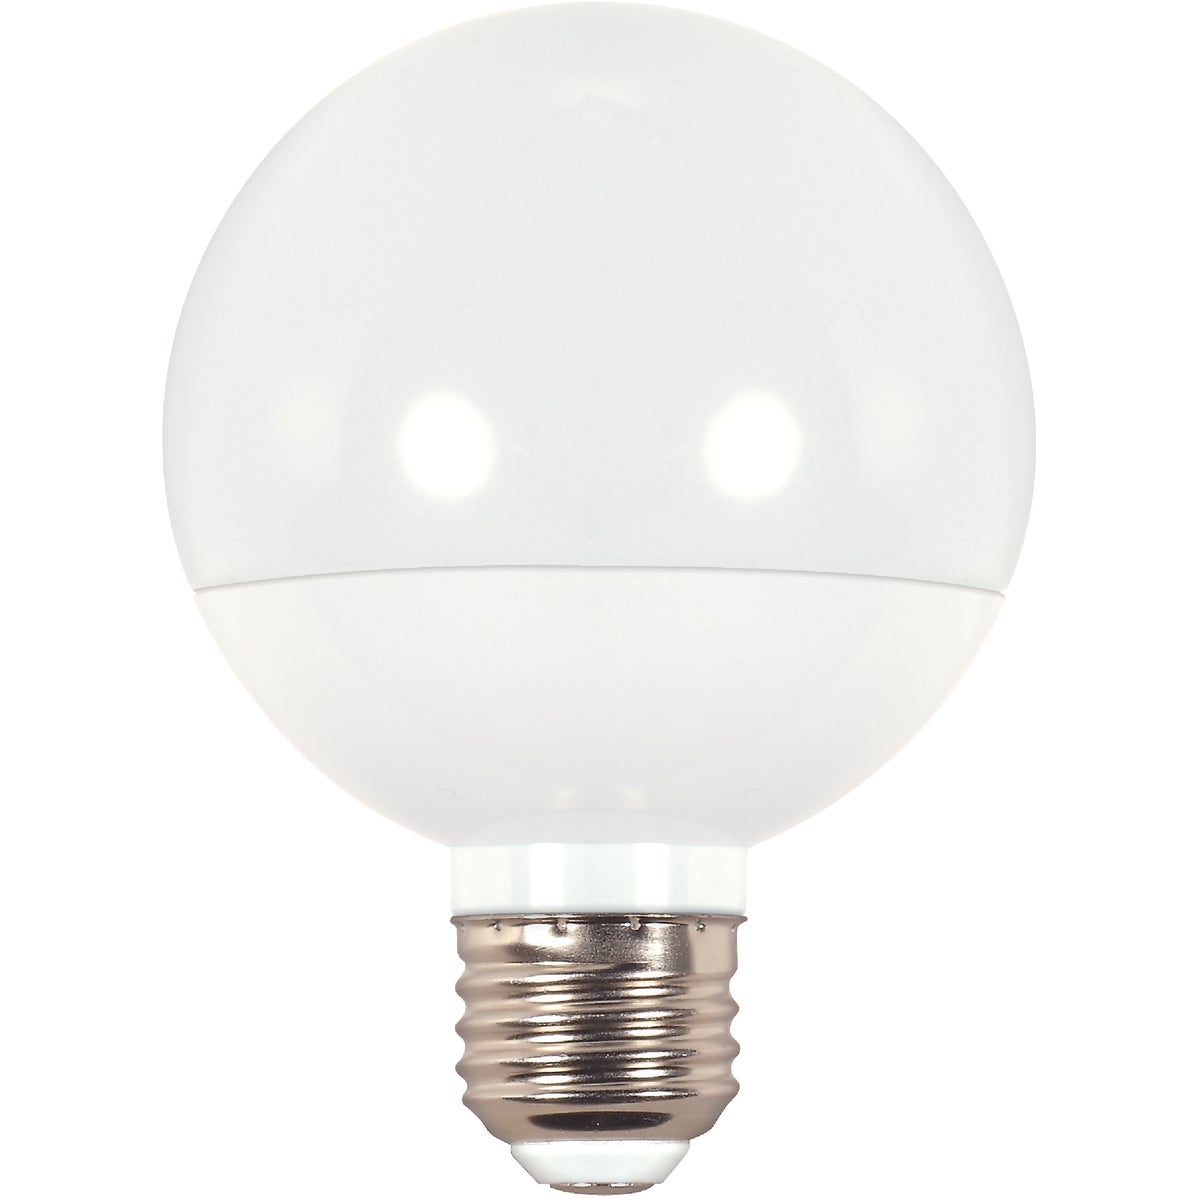 Item 501631, Decorative G25 LED (light emitting diode) globe light bulb with medium base